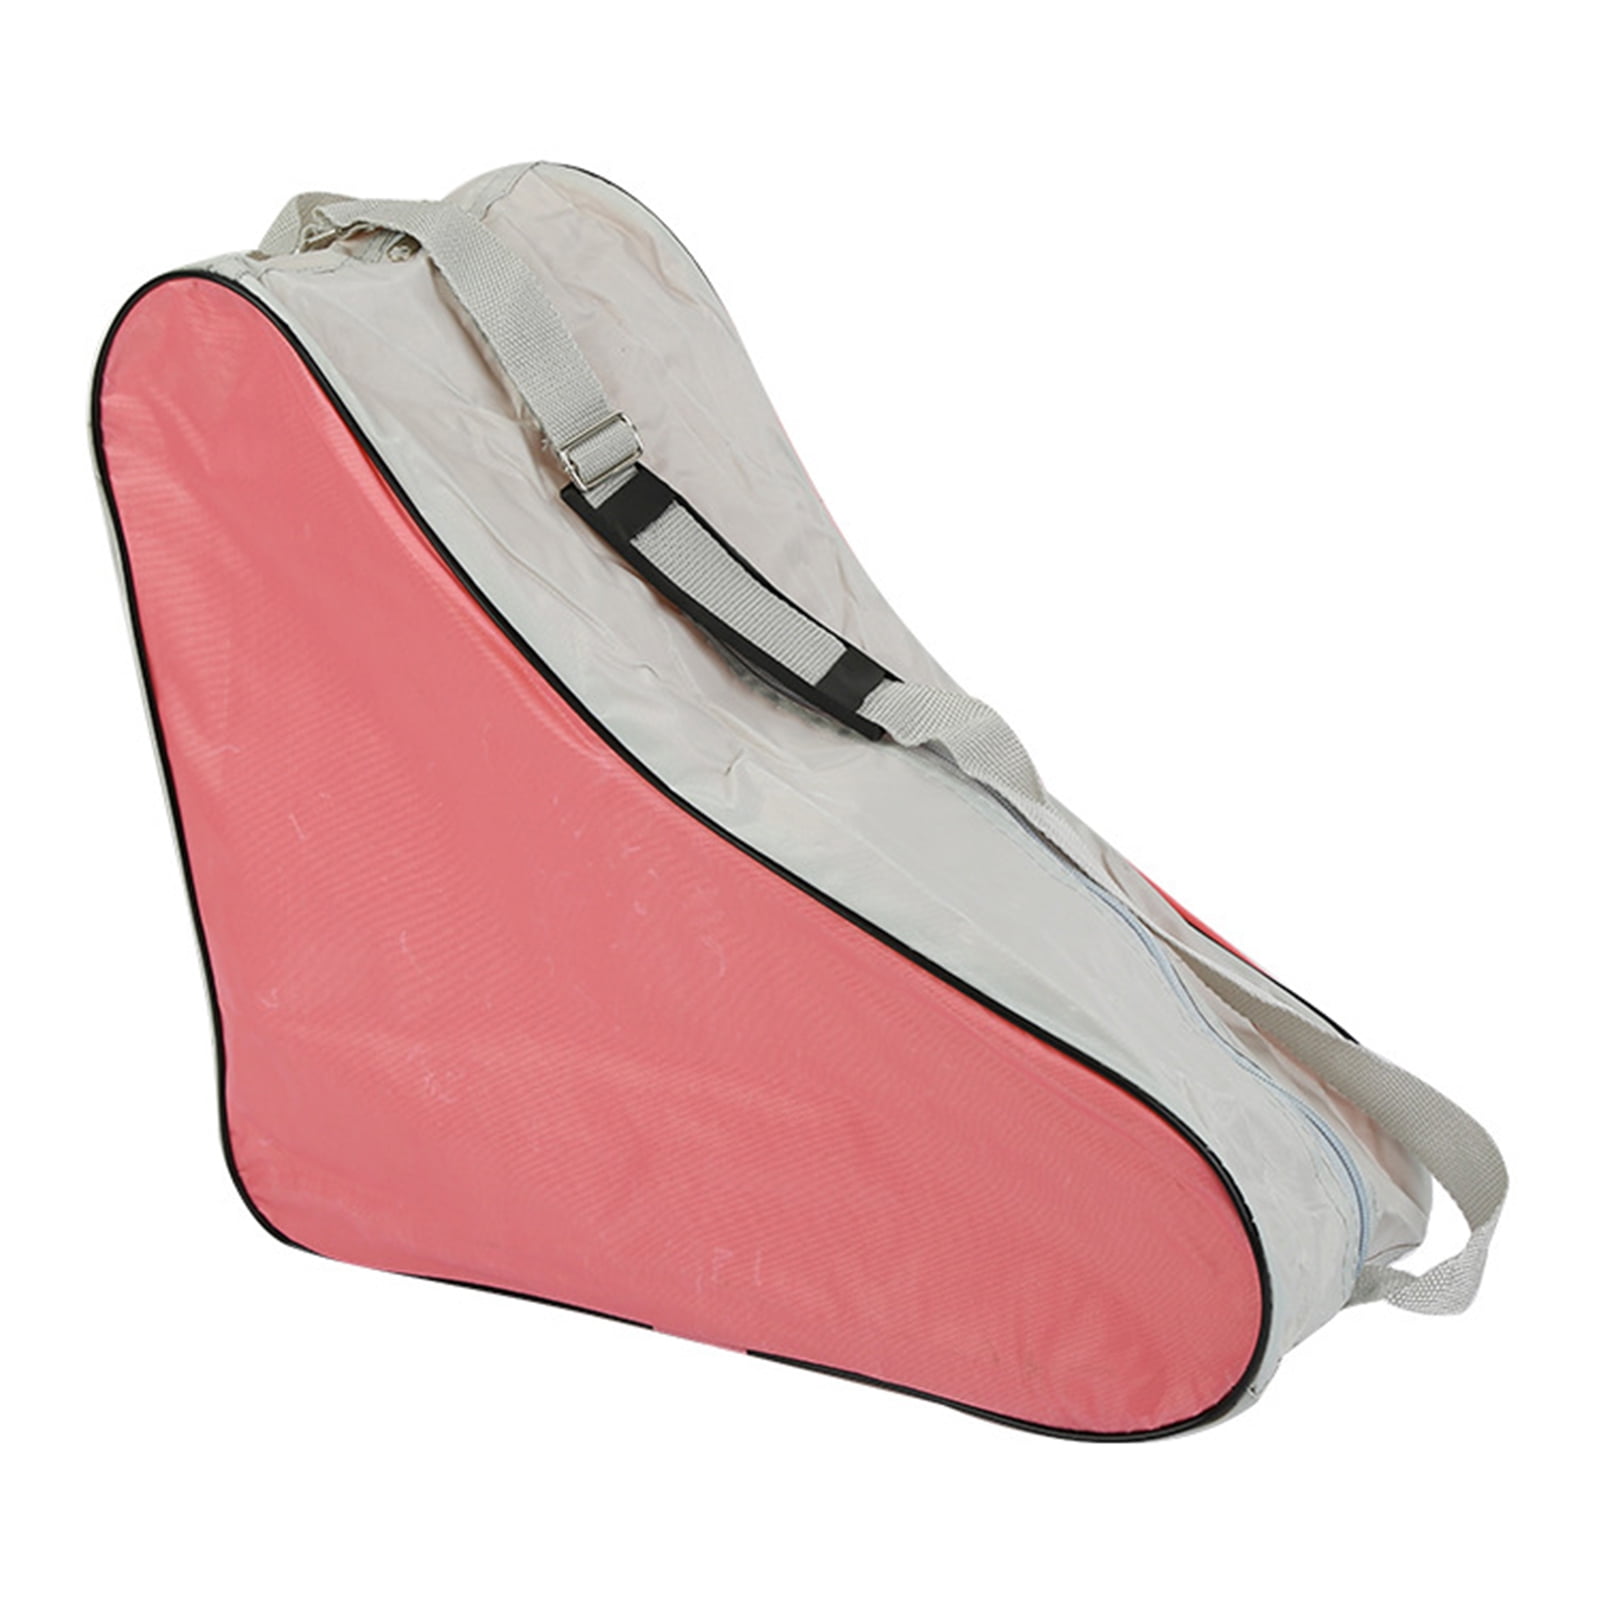 Portable Adjustable Shoulder Strap Roller Skating Bag Skates Carry Bag Cases 